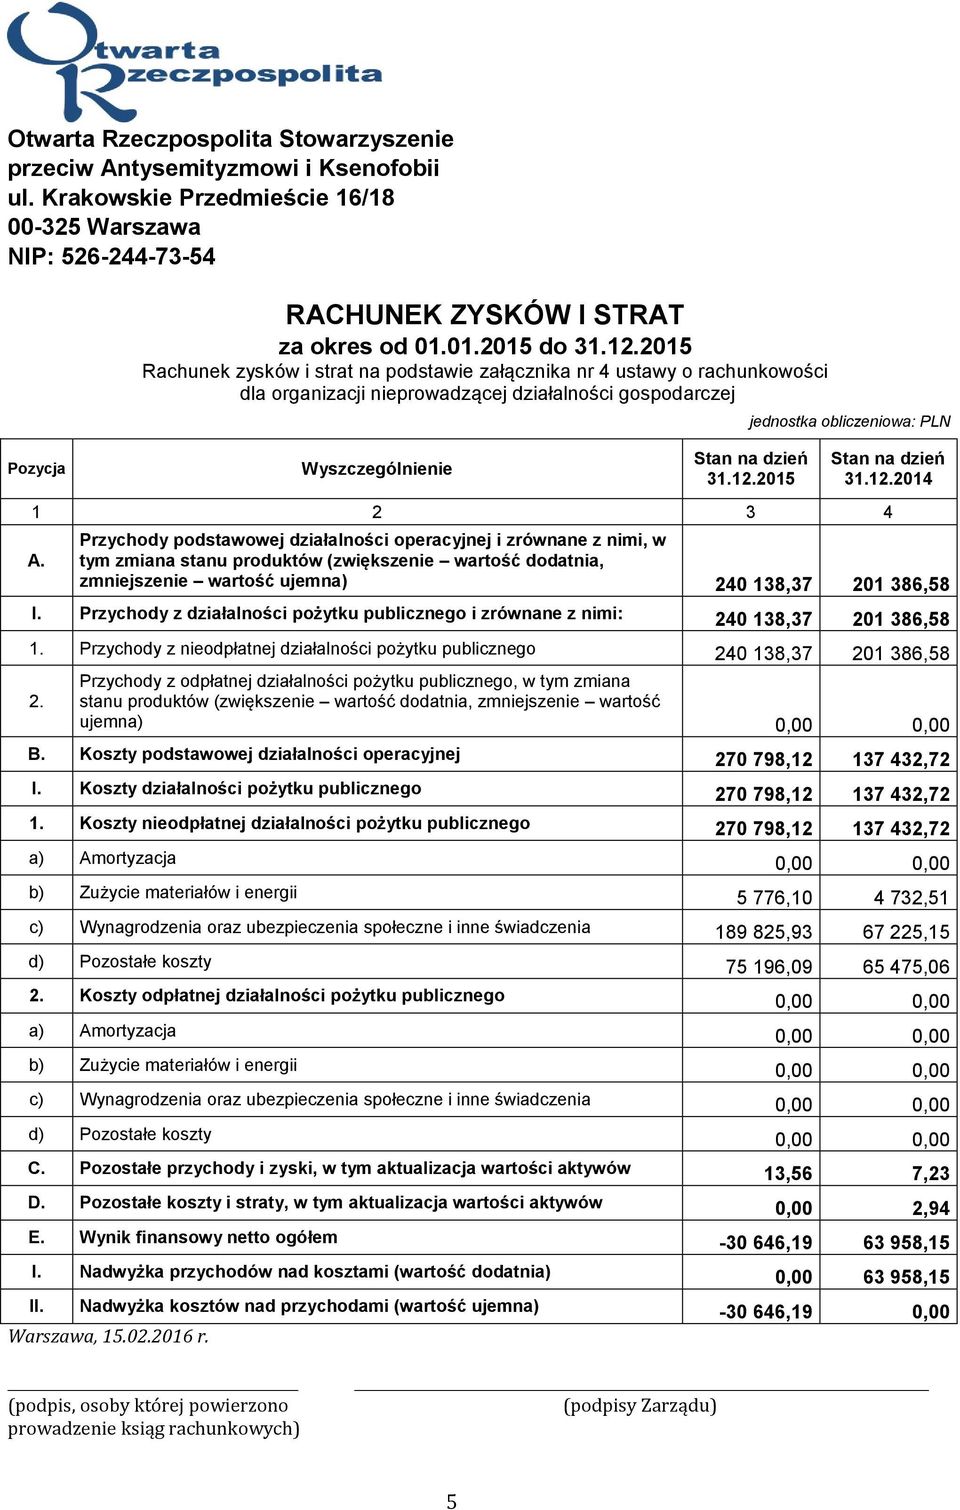 2015 Rachunek zysków i strat na podstawie załącznika nr 4 ustawy o rachunkowości dla organizacji nieprowadzącej działalności gospodarczej Wyszczególnienie jednostka obliczeniowa: PLN 31.12.